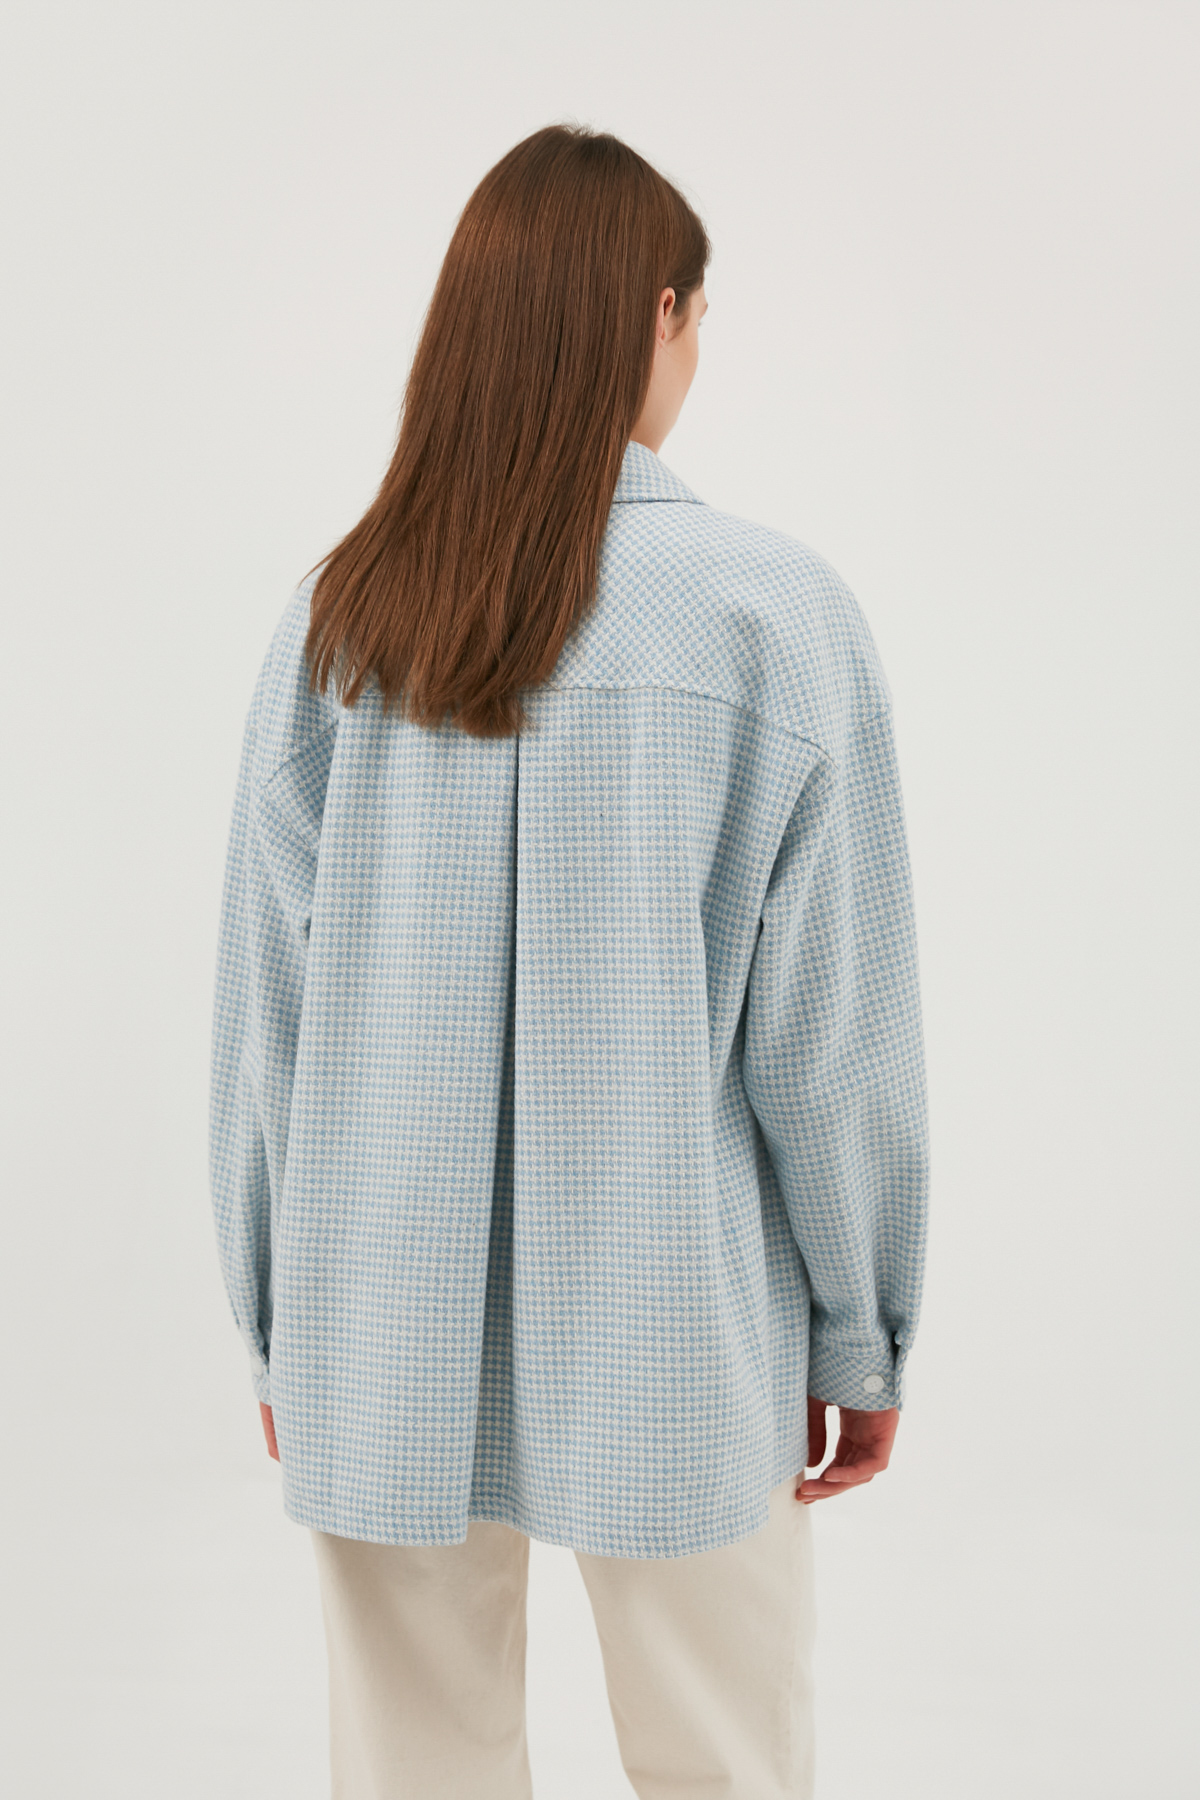 Blue-white plaid flannel top shirt, photo 6